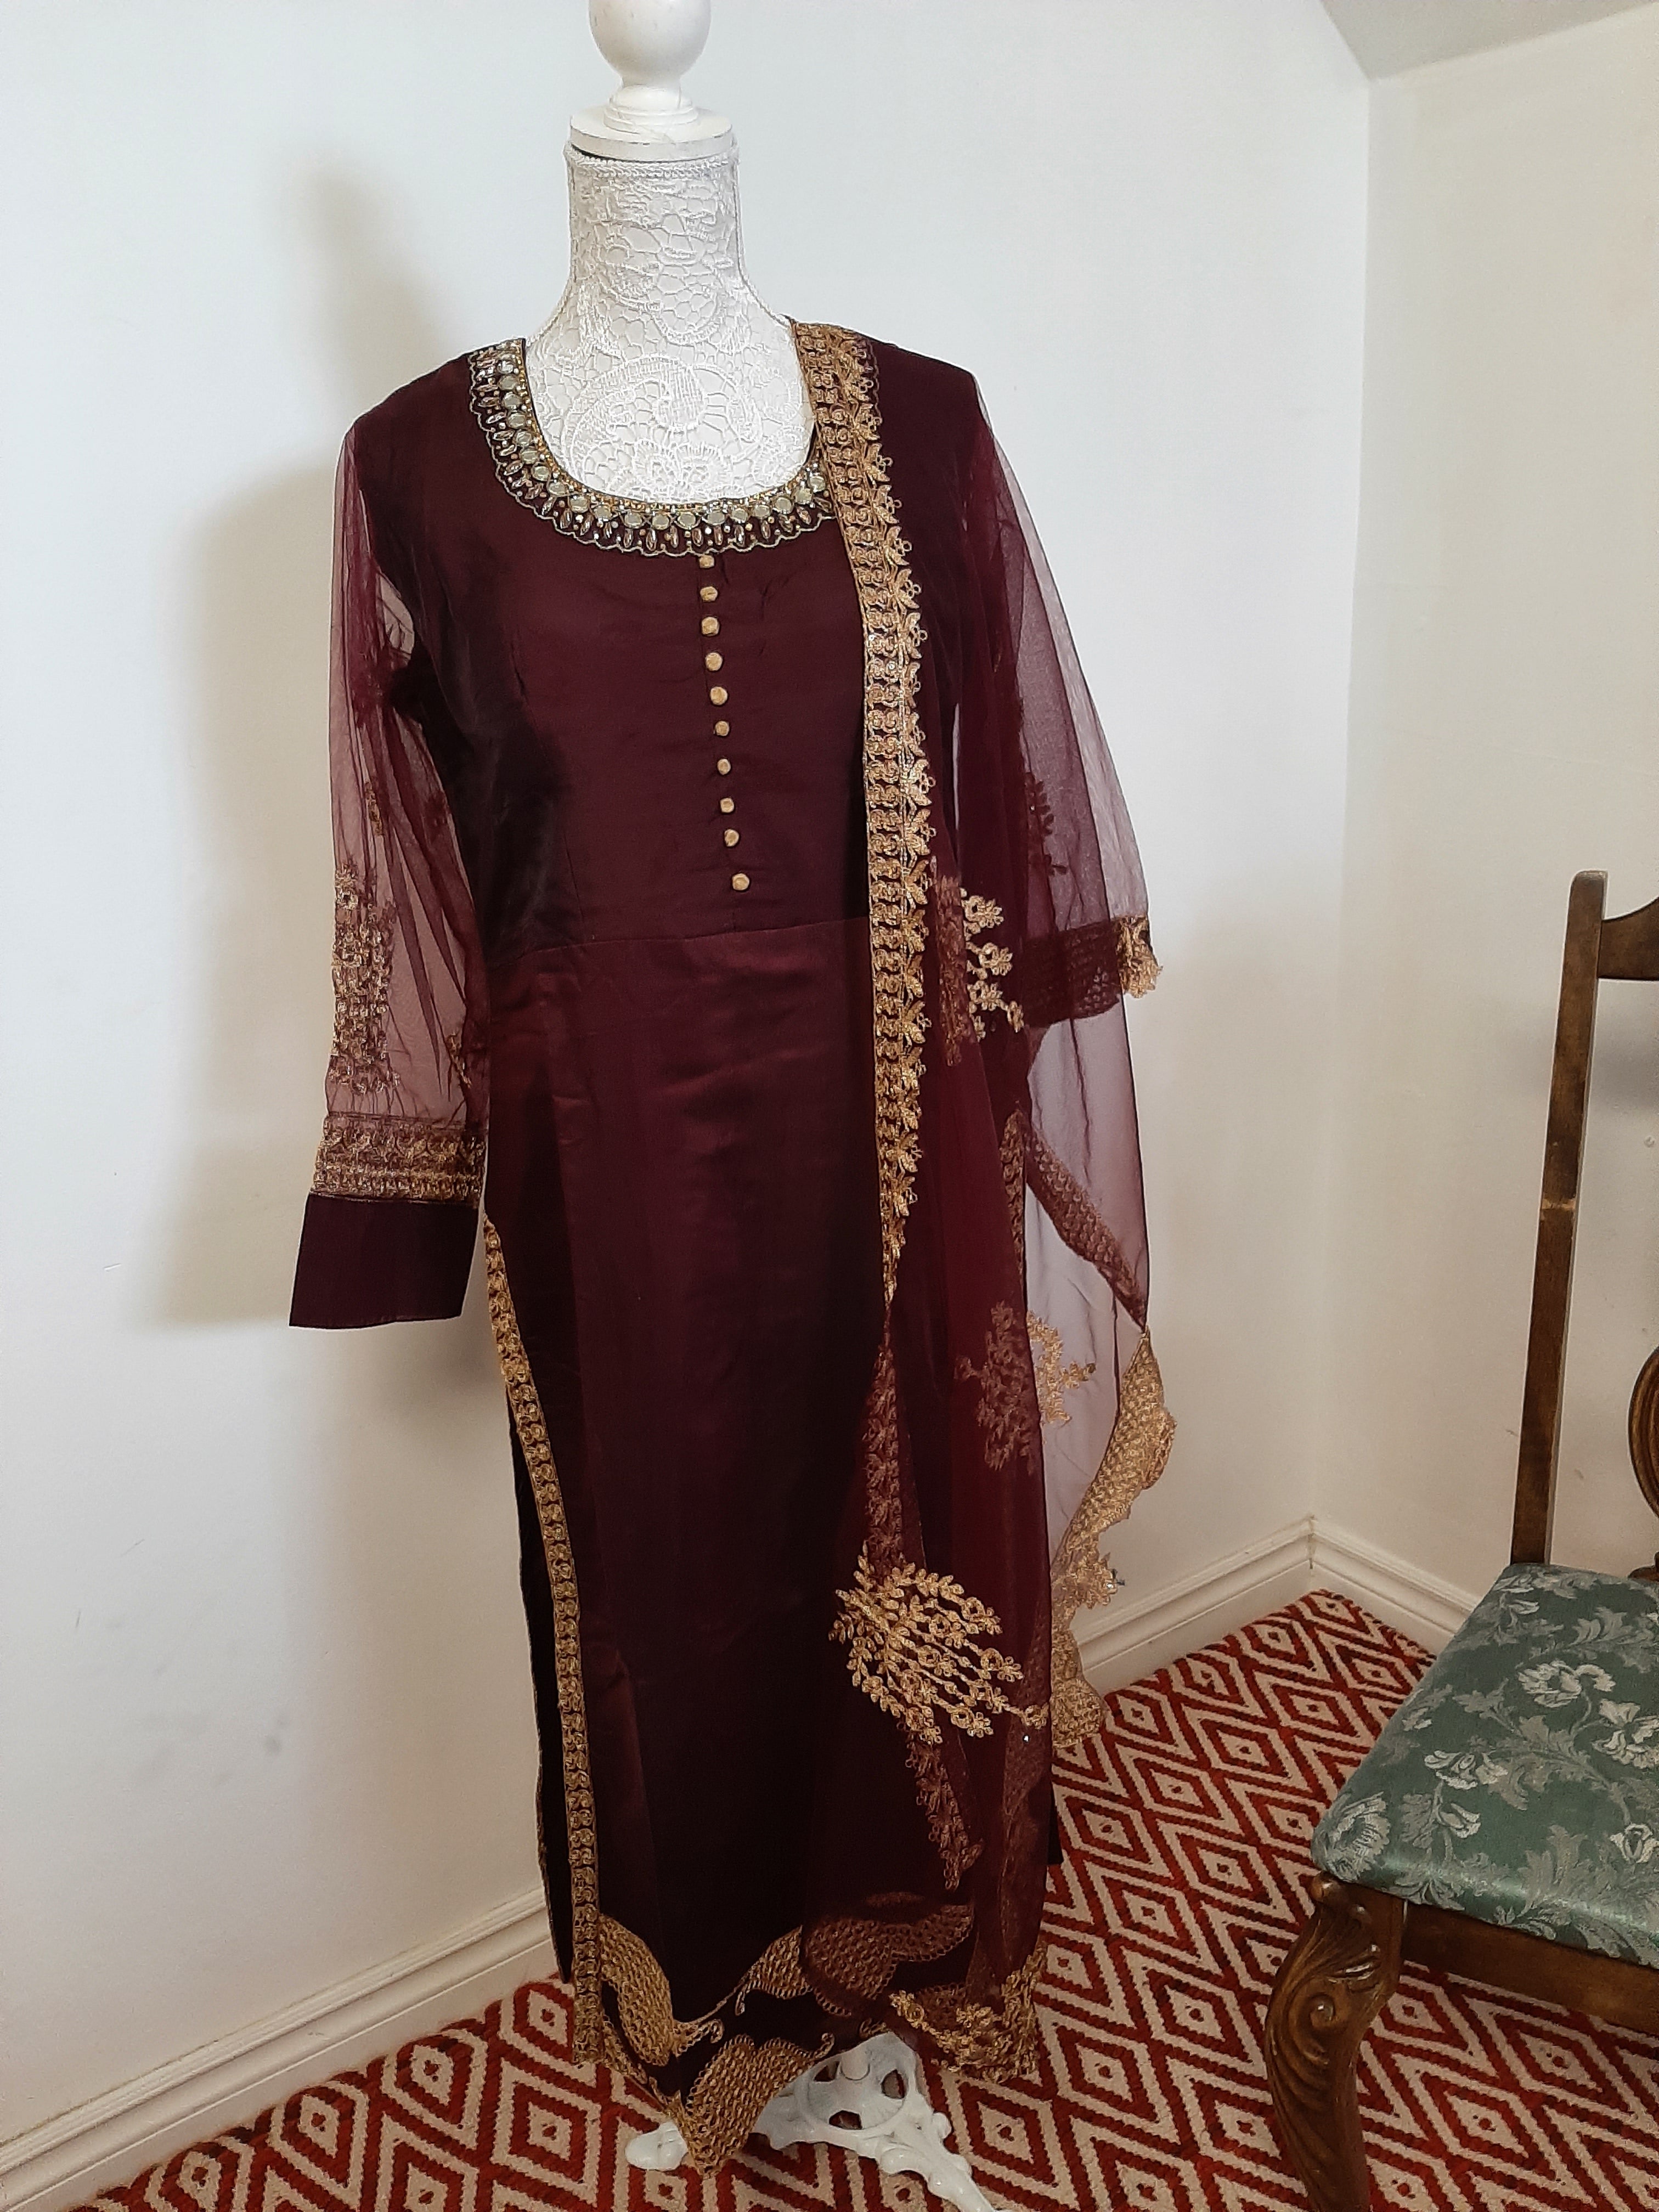 Best Eid Dresses Online @ Empress Clothing - Anarkali, Salwar Kameez